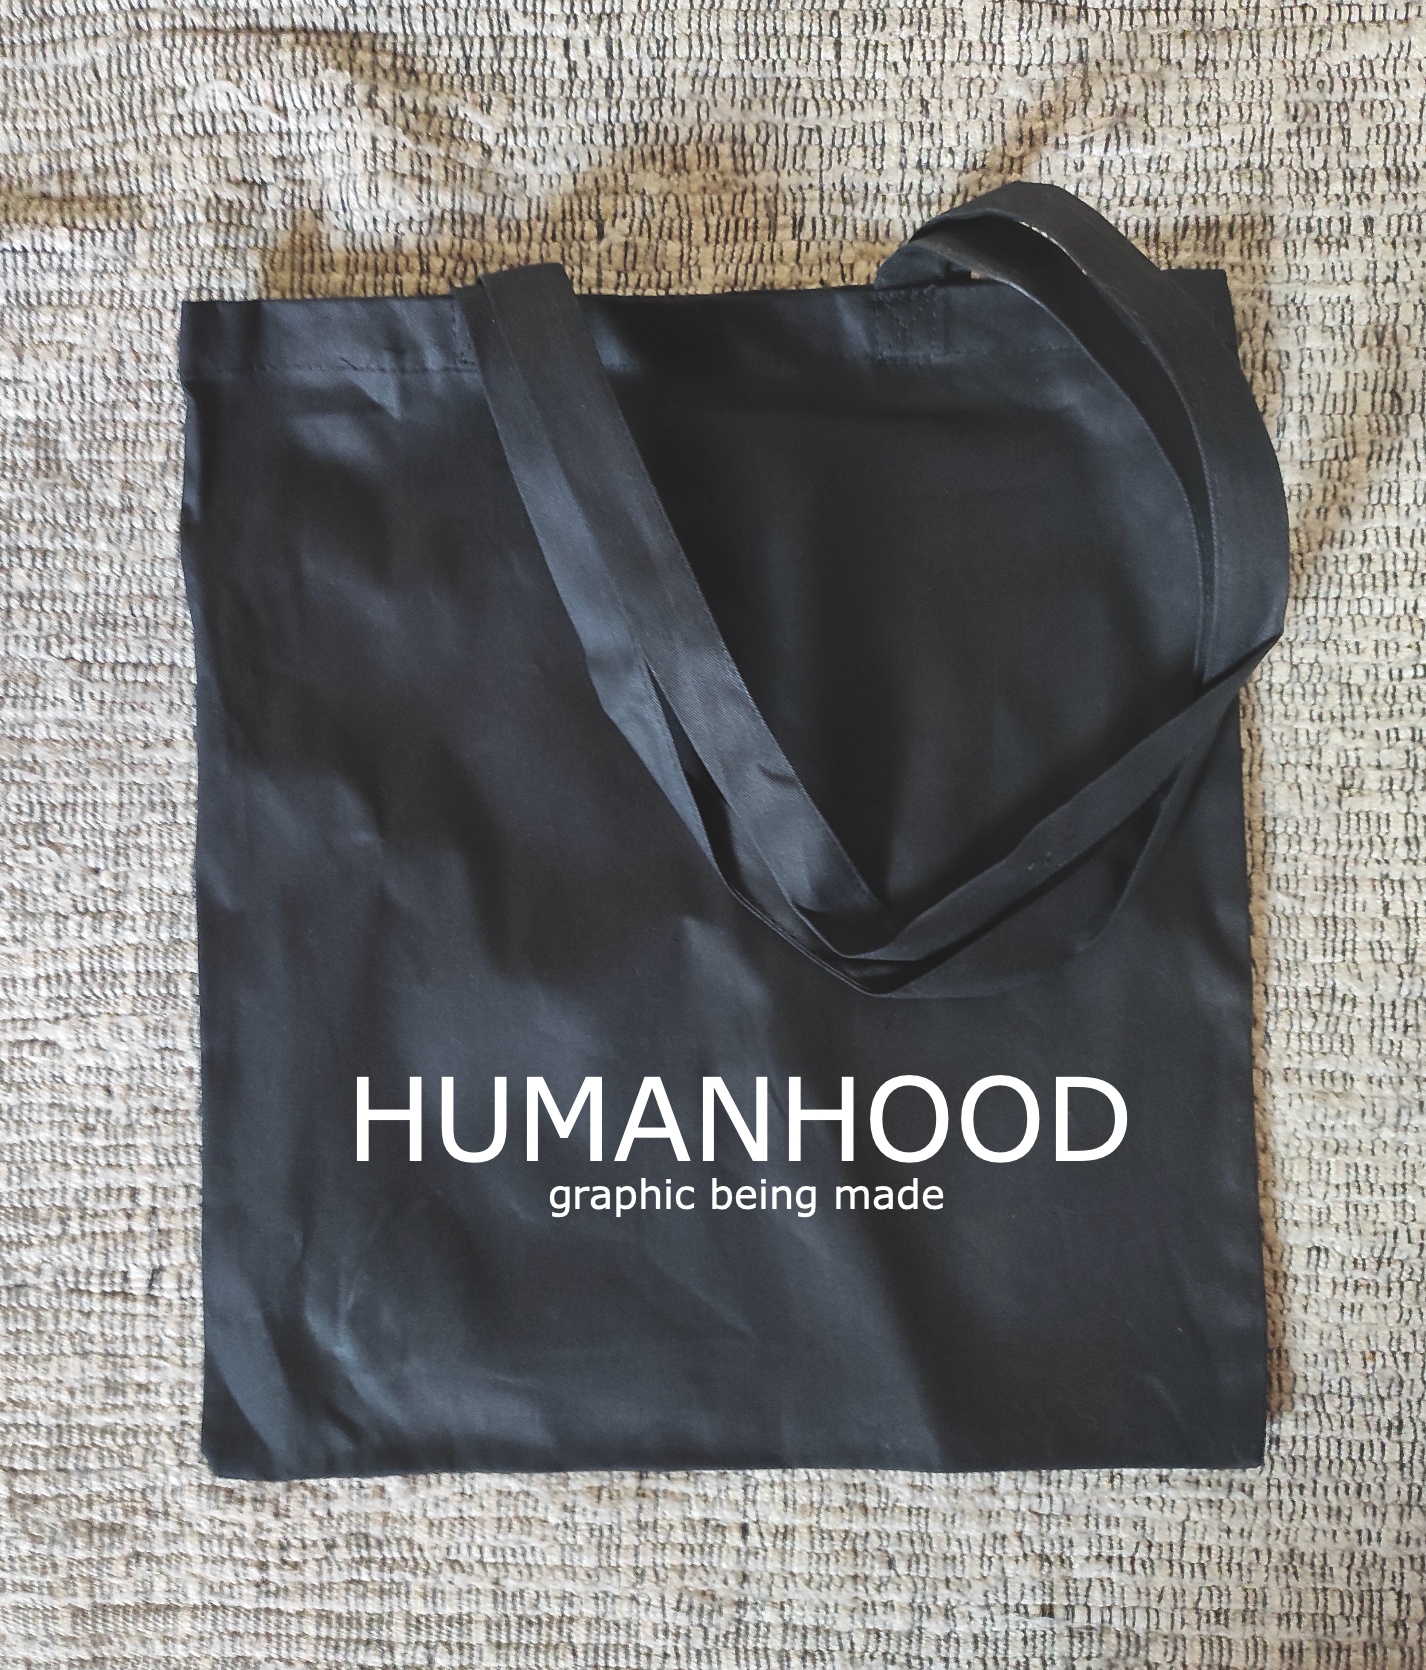 Torba Humanhood + Pin + List Podziękowanie. Humanhood Bag +  Pin + Thank You